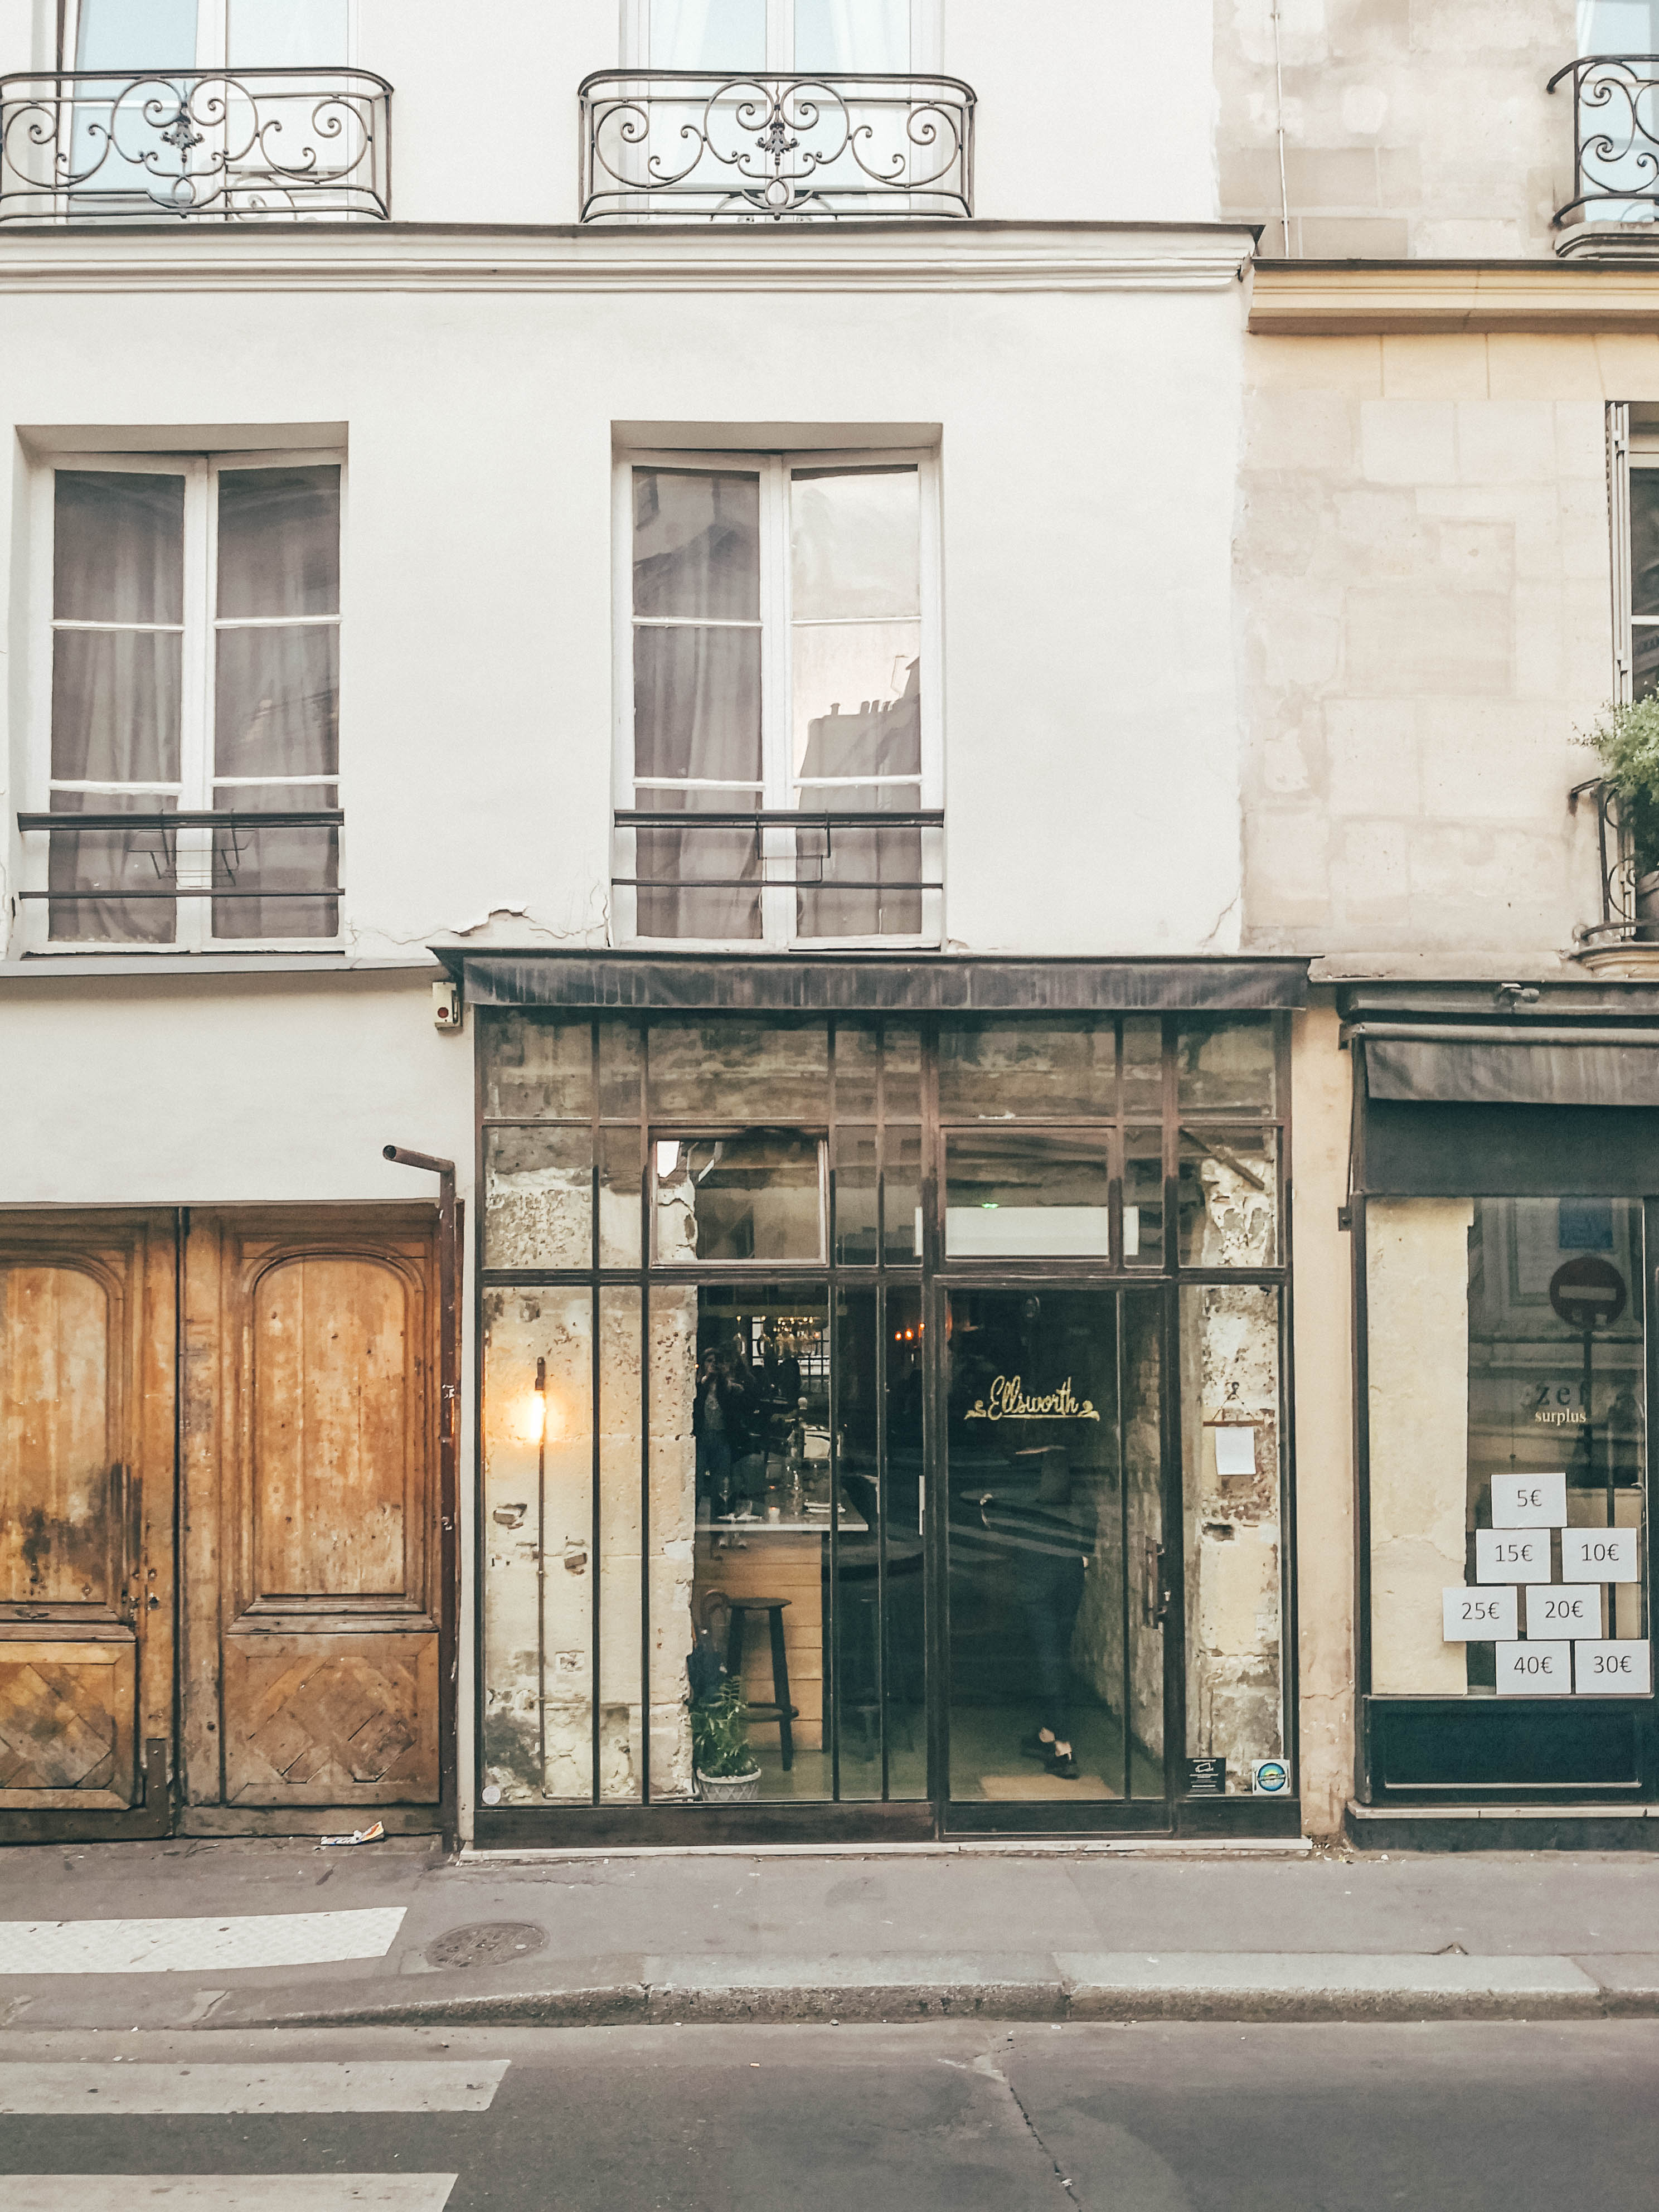 Paris-Cafes-7-of-7 Cafes in Paris - My Latest Discoveries